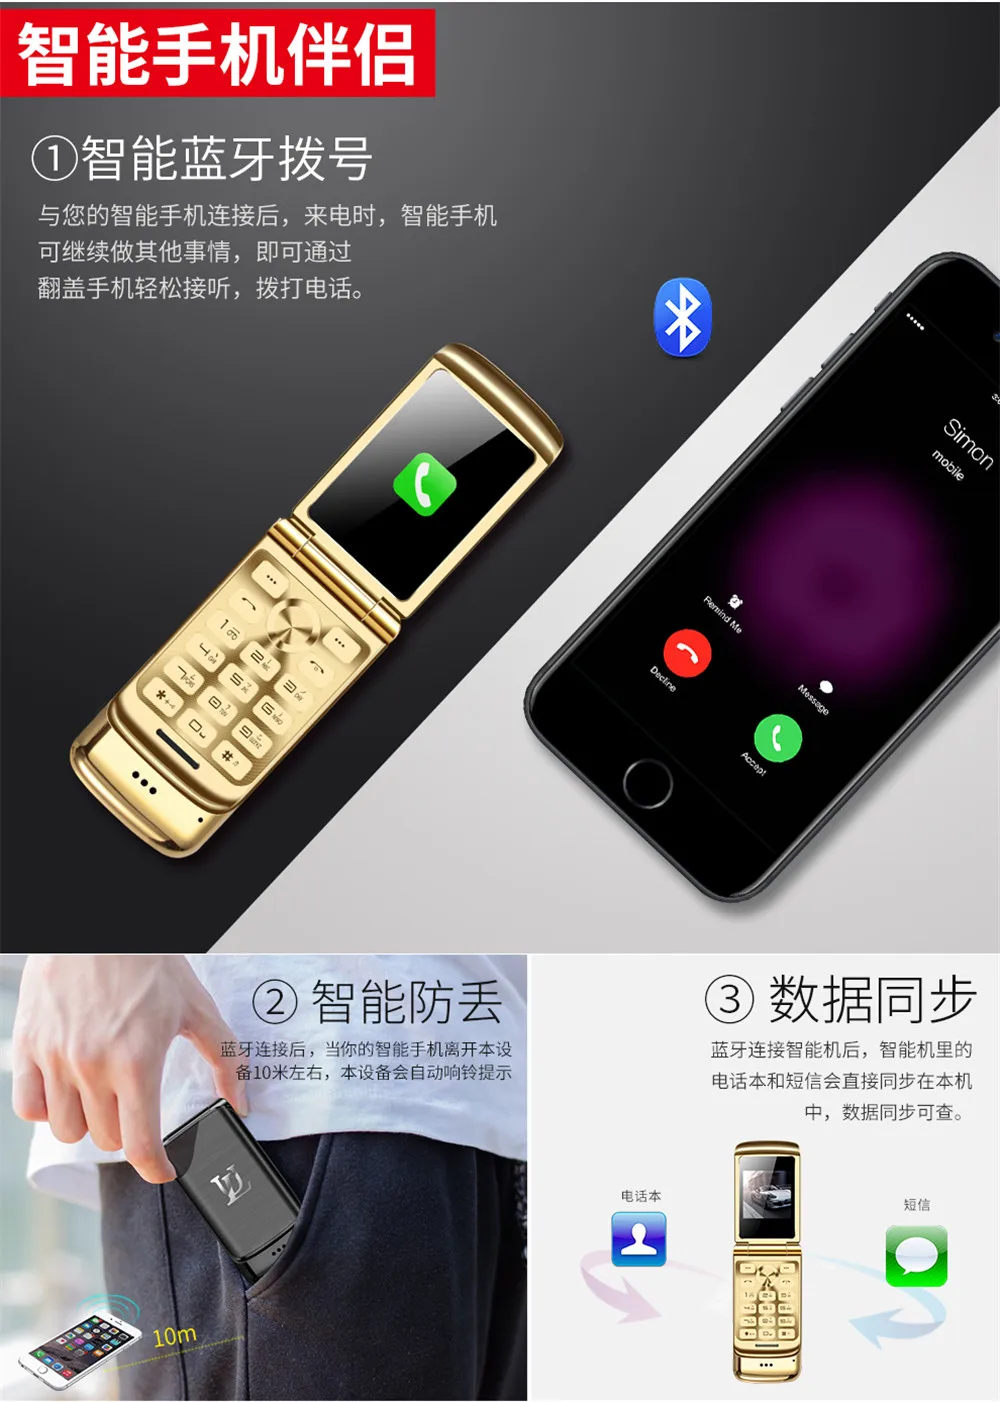 2018 новый оригинальный маленький Флип Мобильный телефон Ulcool V9 1,54 "Bluetooth FM радио анти-потеря супер 750 мАч Две сим-карты MP3 мобильный телефон